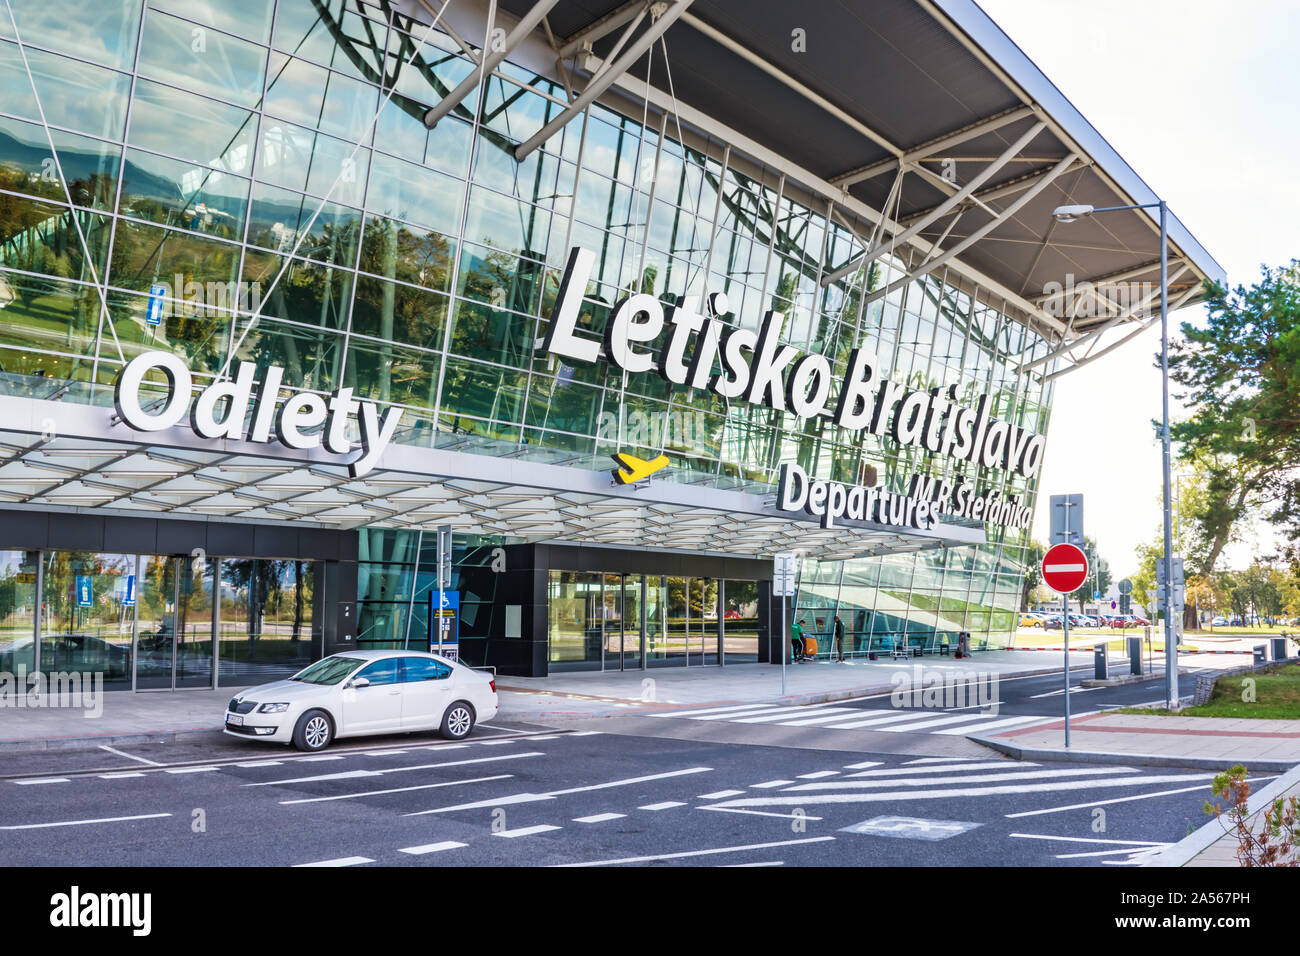 BRATISLAVA, Slovacchia - 6 ottobre 2019: entrata nella sala partenze dell'aeroporto di Bratislava terminale con la lettera grande segno "M. R. Stefanik Bratis Airport Foto Stock